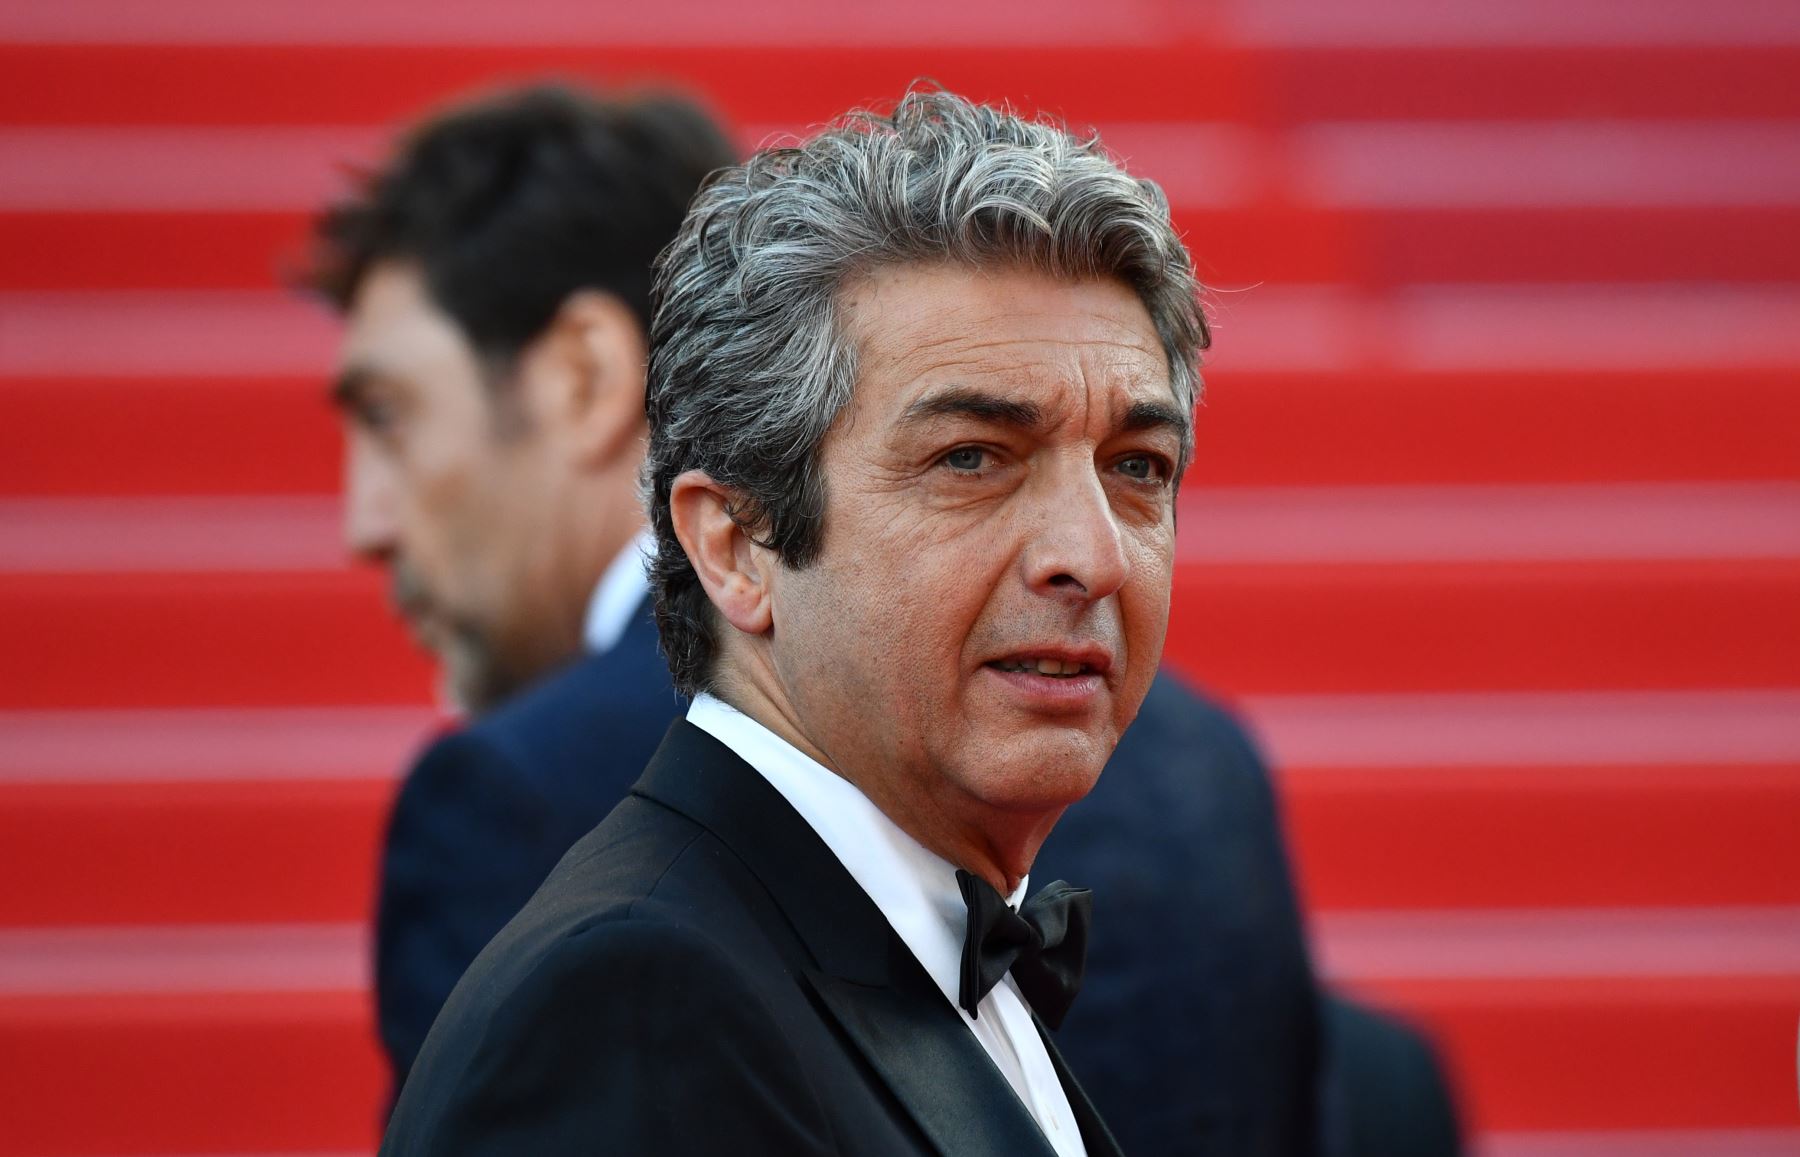 El actor argentino Ricardo Darin posa al llegar el 8 de mayo de 2018 para la proyección de la película "Todos lo saben" y la ceremonia de inauguración de la 71 edición del Festival de Cannes en Cannes, en el sur de Francia.
Foto: AFP